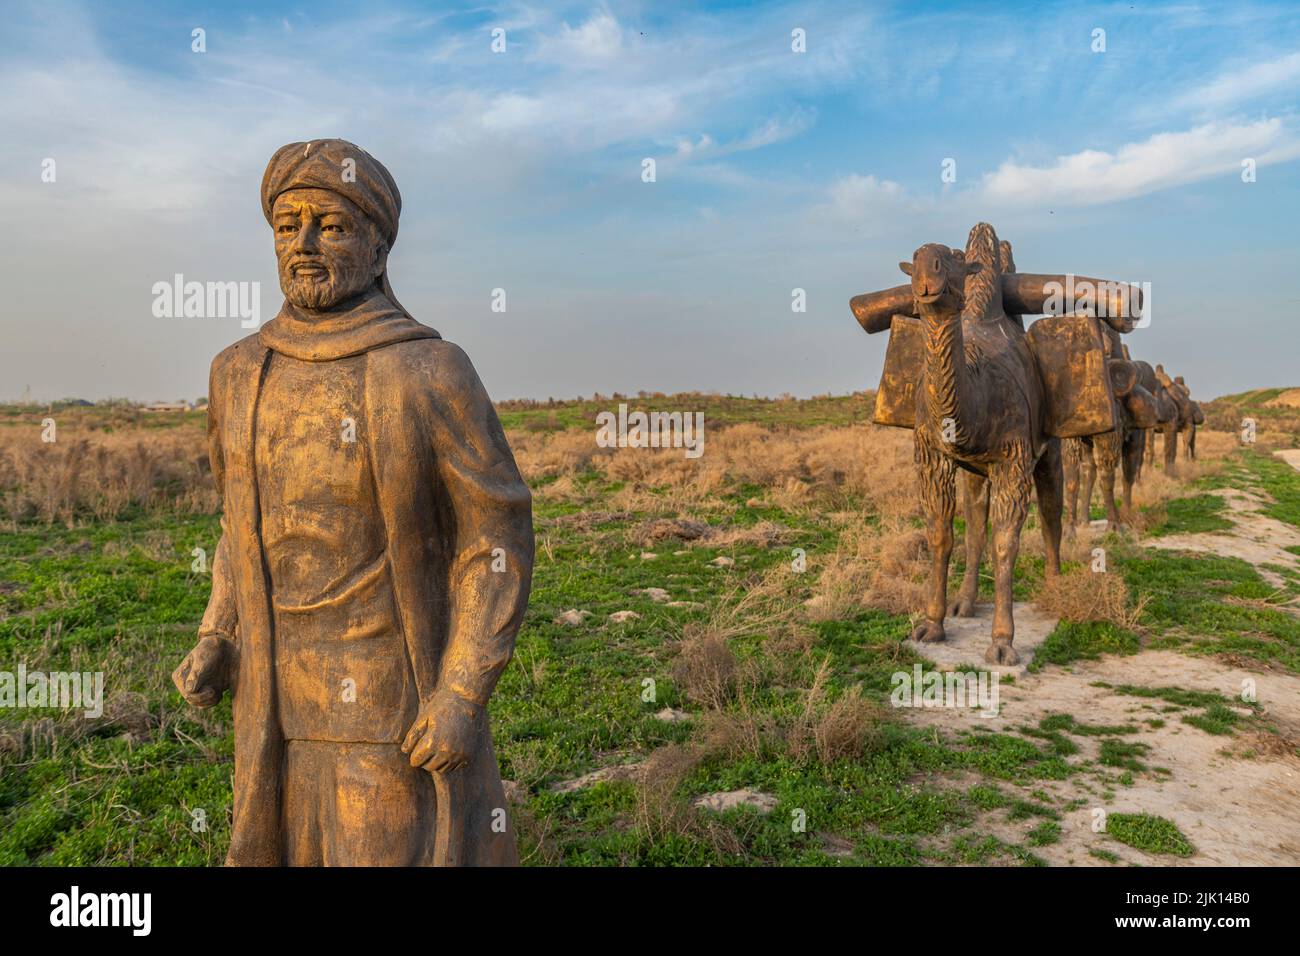 Sculpture de caravane de chameaux en bronze, colonie d'Otrartobe, Turkestan, Kazakhstan, Asie centrale, Asie Banque D'Images